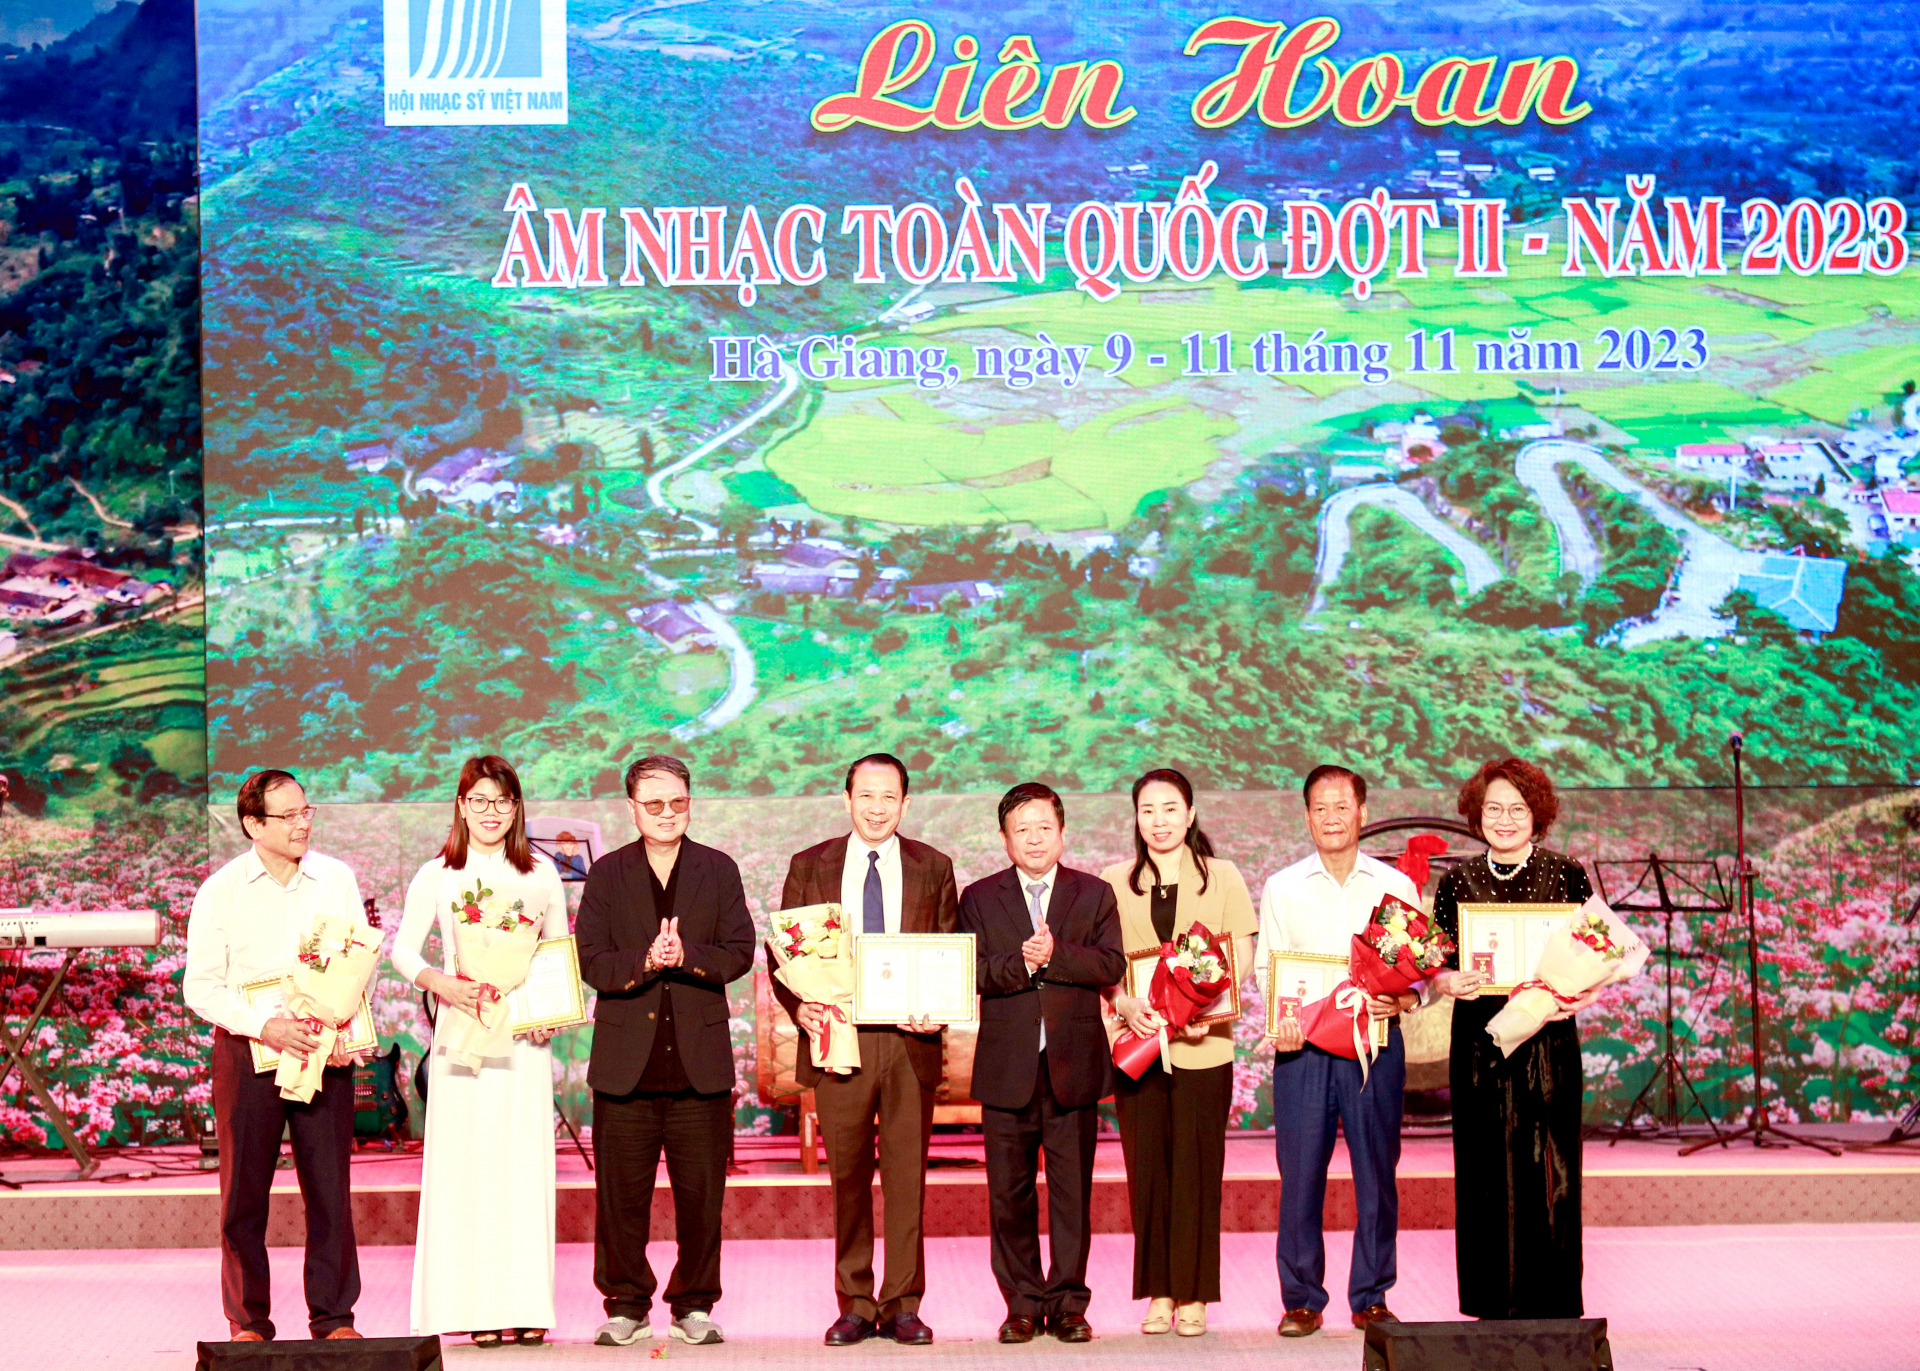 Phó giáo sư, Tiến sỹ, Nhạc sỹ Đỗ Hồng Quân, Chủ tịch Liên hiệp các Hội Văn học nghệ thuật Việt Nam trao Kỷ niệm chương vì sự nghiệp âm nhạc của Hội Nhạc sỹ Việt Nam cho các cá nhân.